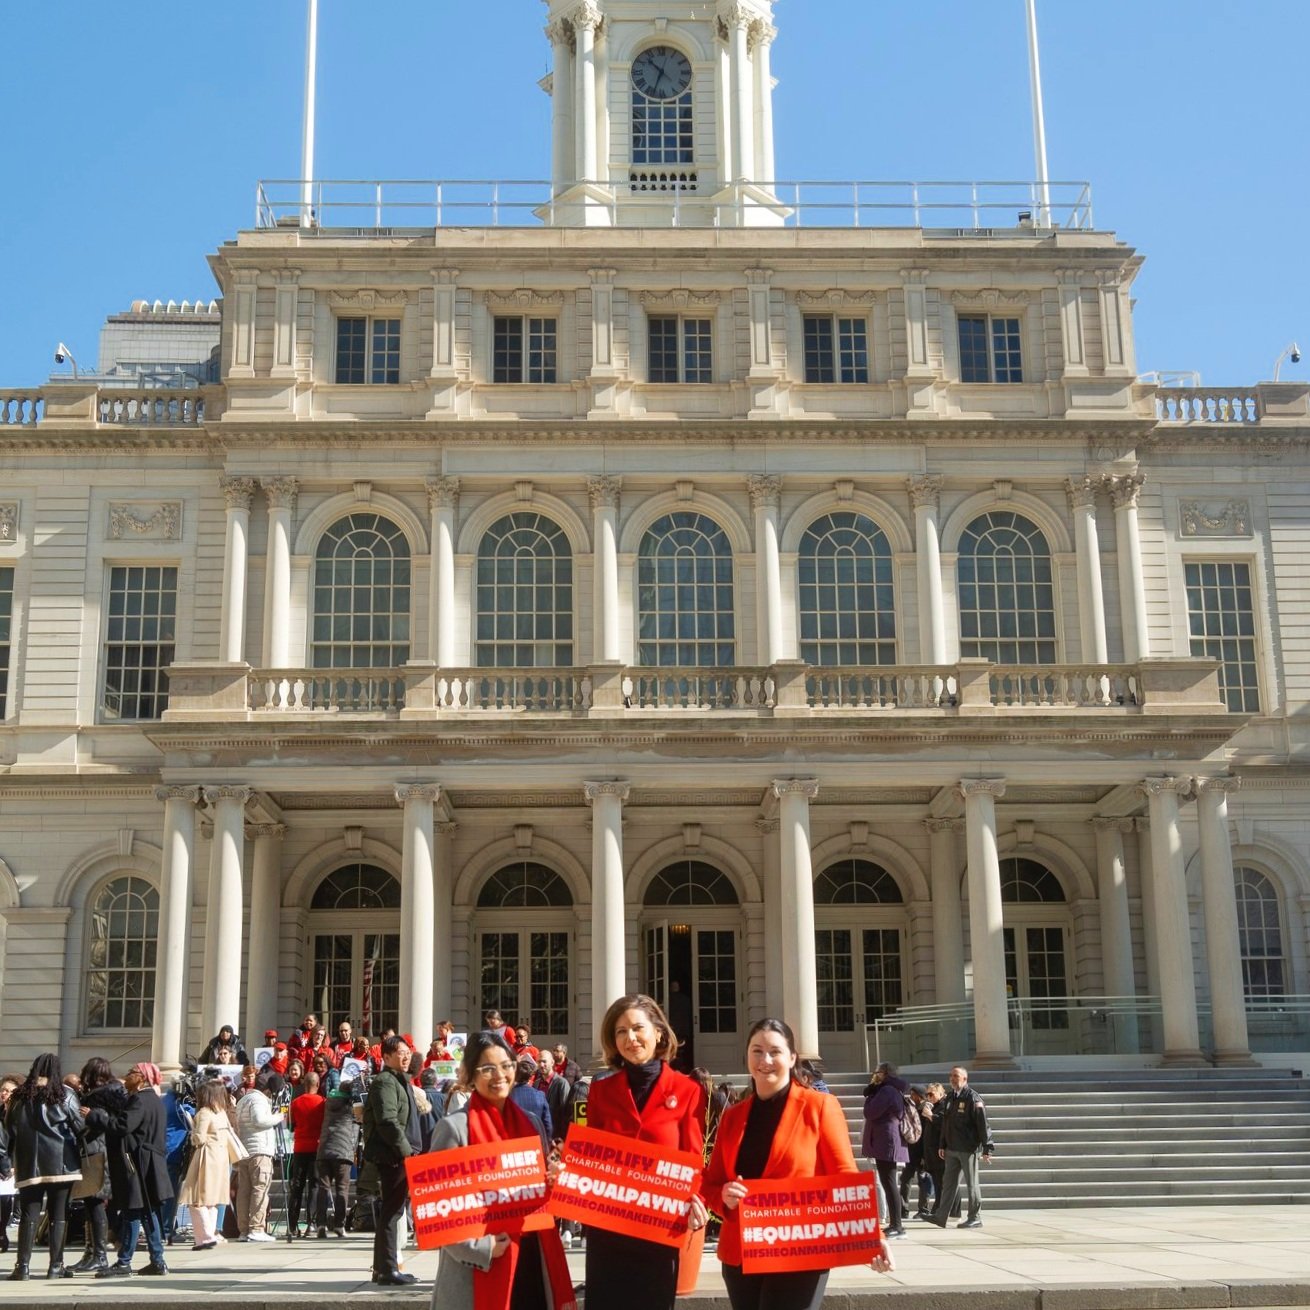 PowHer NY - Equal Pay Day Rally at City Hall